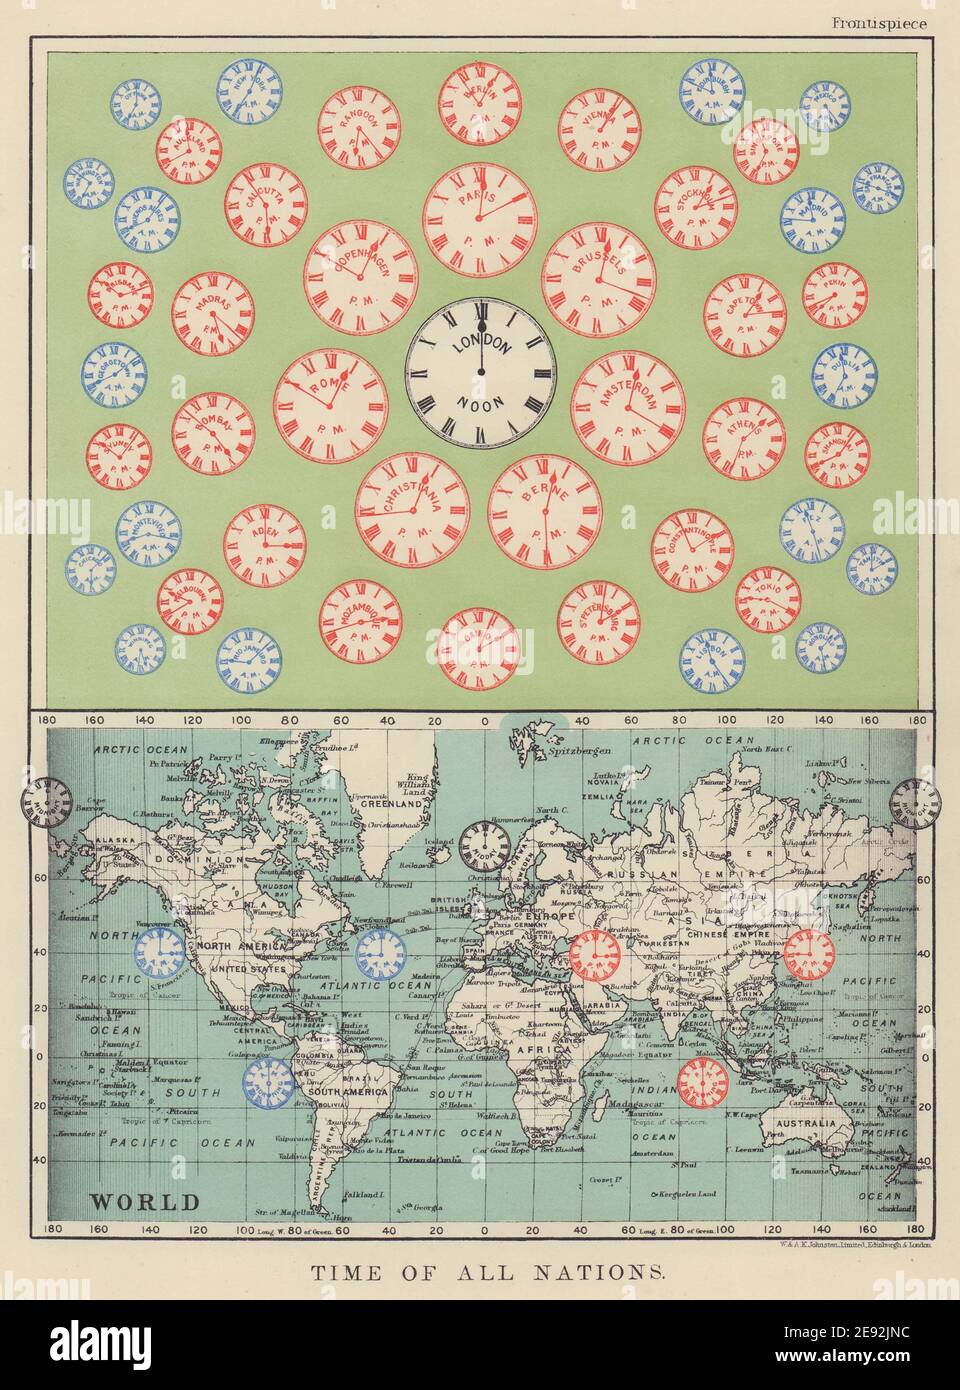 ZEIT ALLER NATIONEN. Vordatiert UTC/Standard-Stundenzeitzonen. JOHNSTON 1910 Karte Stockfoto